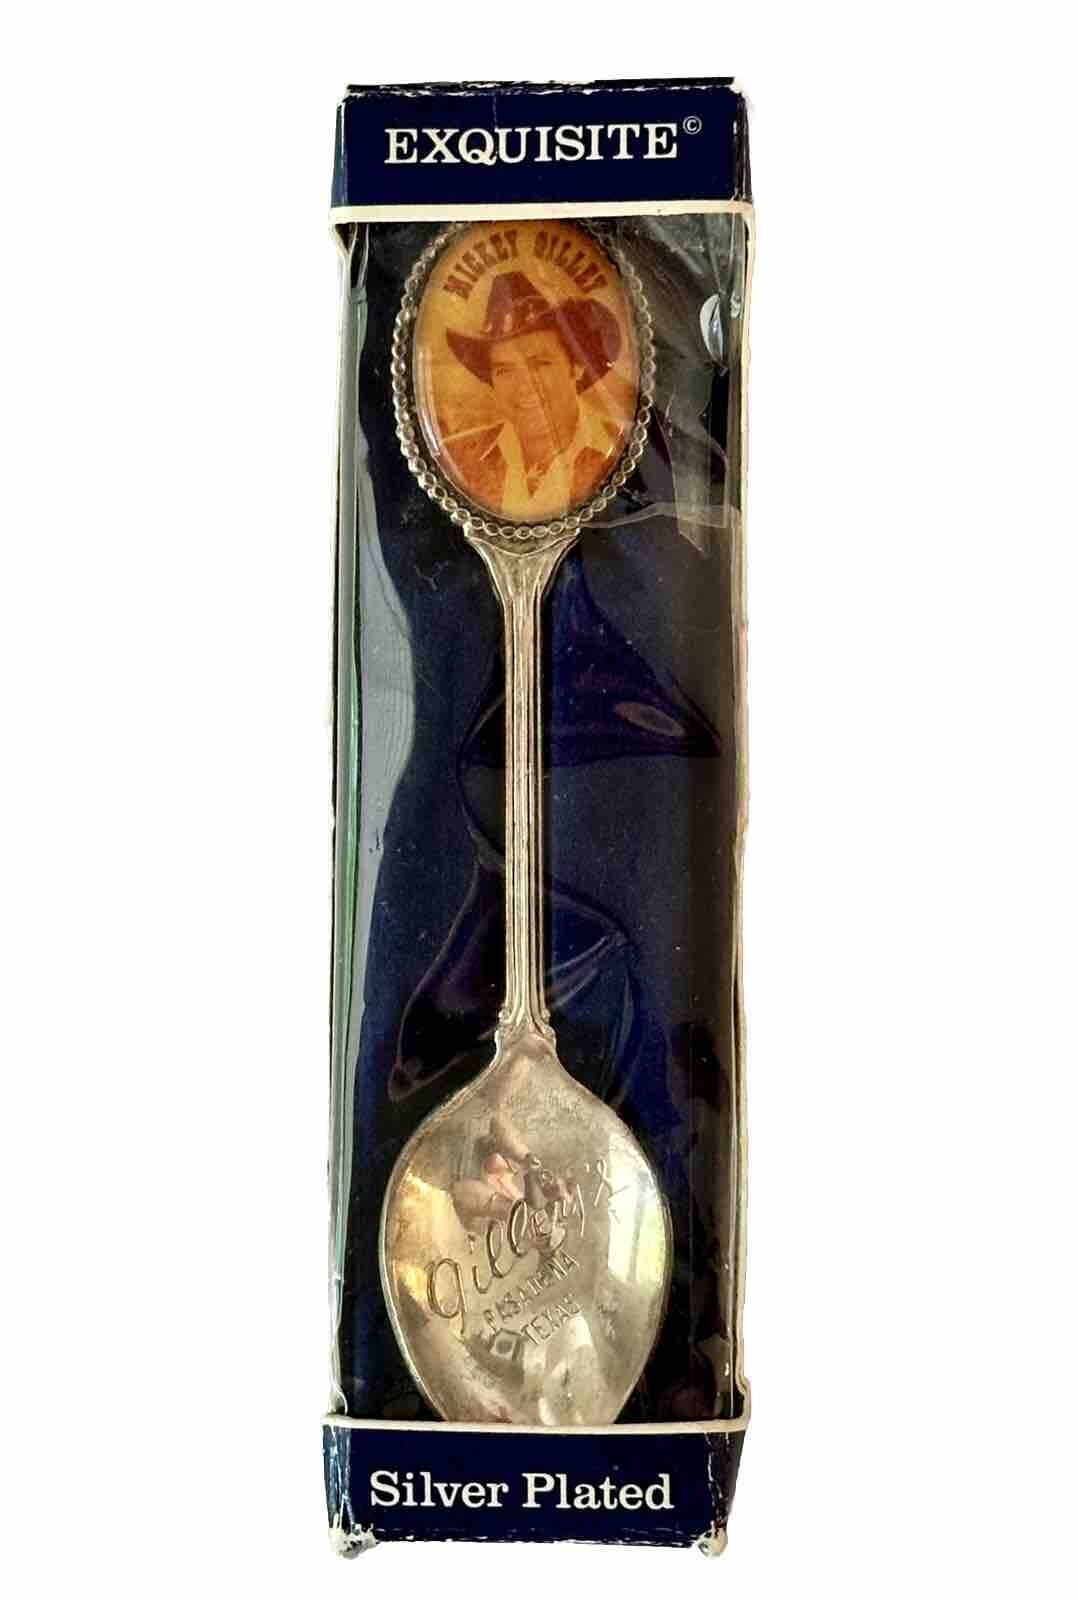 Vintage Souvenir Spoon US Collectible Mickey Gilley Gilley\'s Pasadena Texas